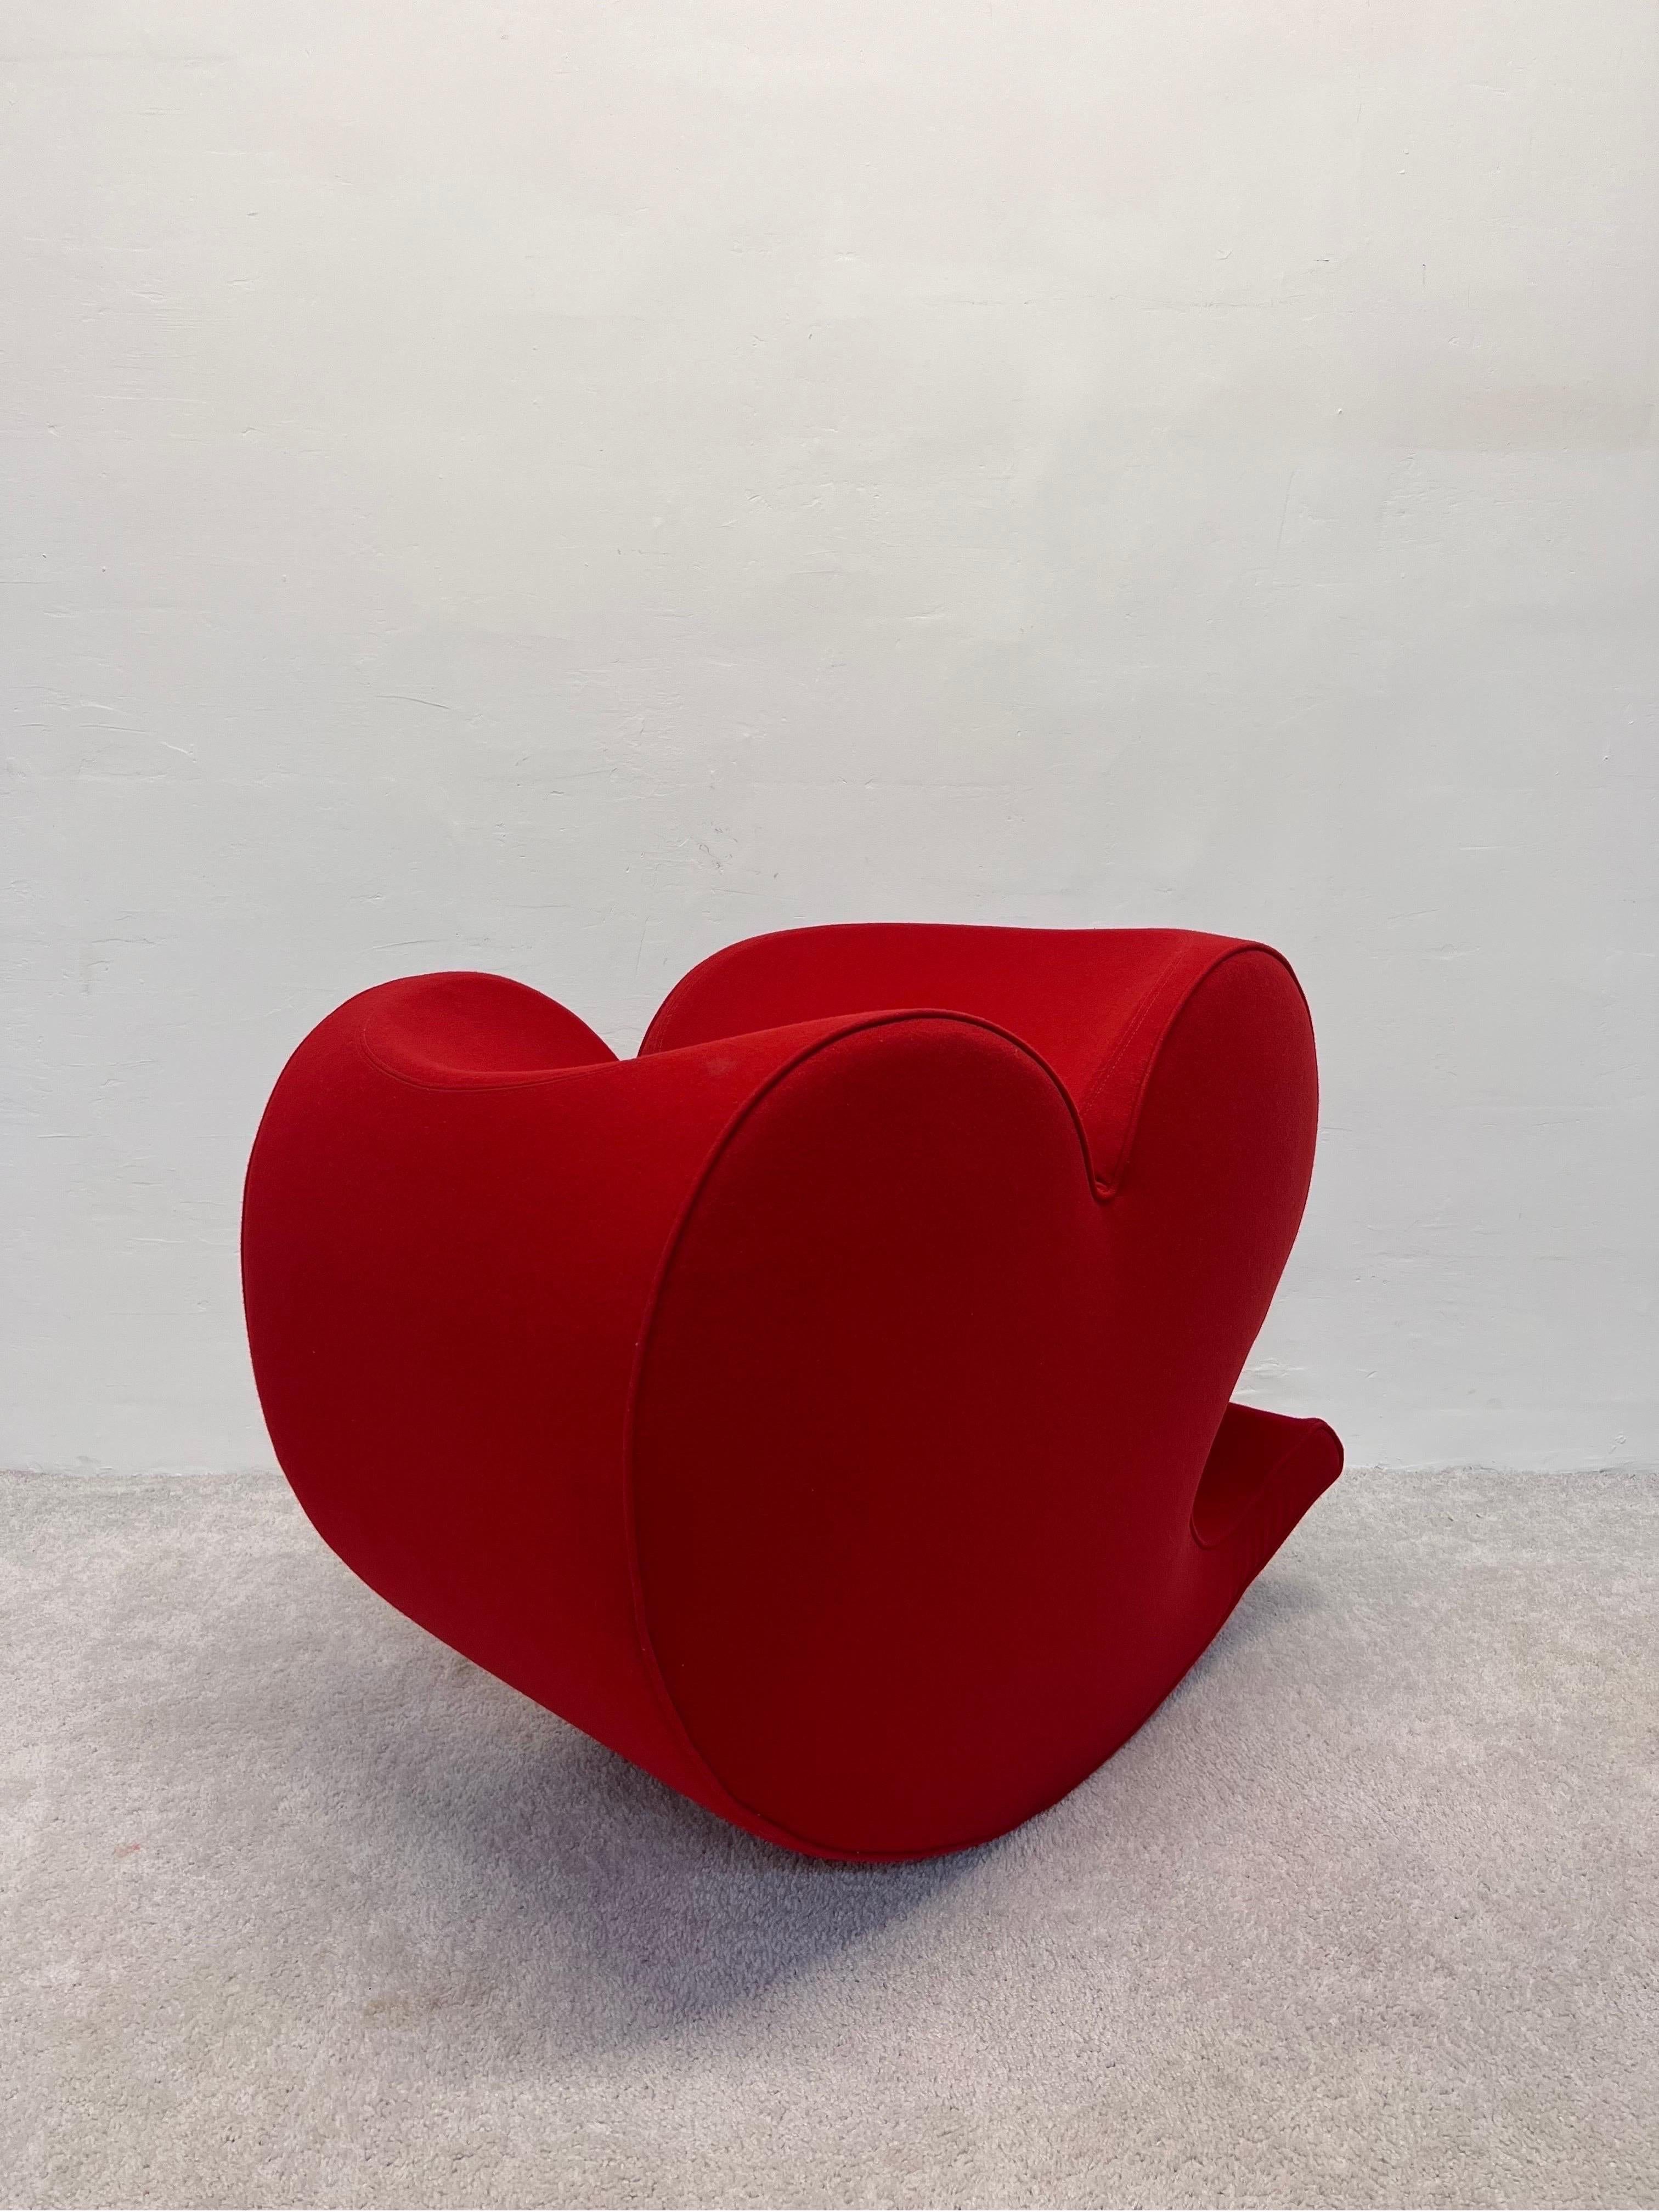 Spring Collection S/One Chaise Soft Heart conçue par Ron Arad en 1988 pour Moroso. Cet exemple date du début des années 1990. La base de la chaise est lestée d'une lourde plaque d'acier pour faire contrepoids. Le tissu en laine rouge d'origine est